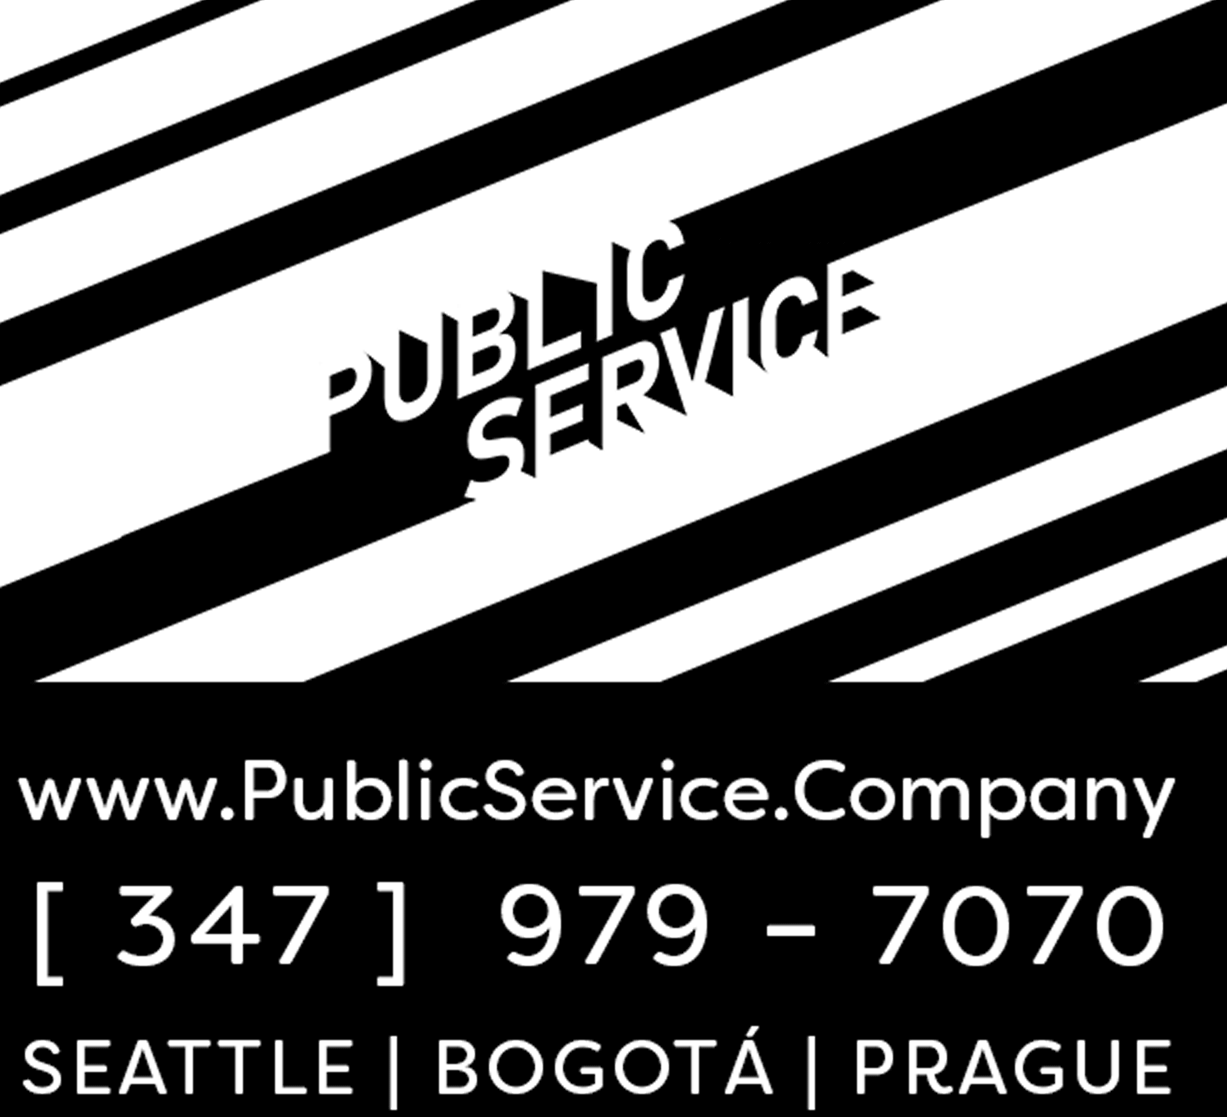 PUBLIC SERVICE COMPANY